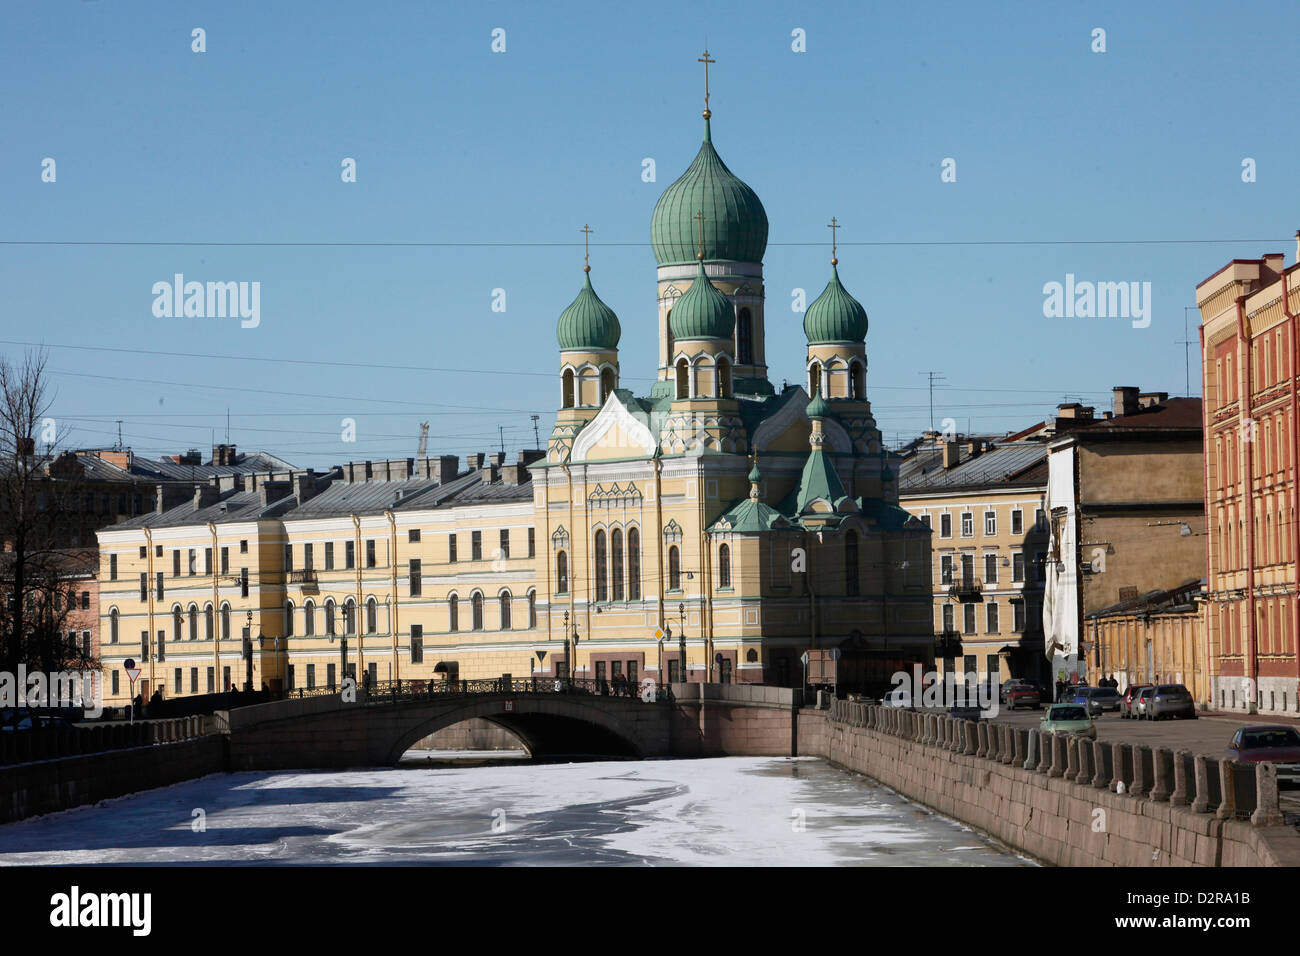 Orthodox church, St. Petersburg, Russia, Europe Stock Photo